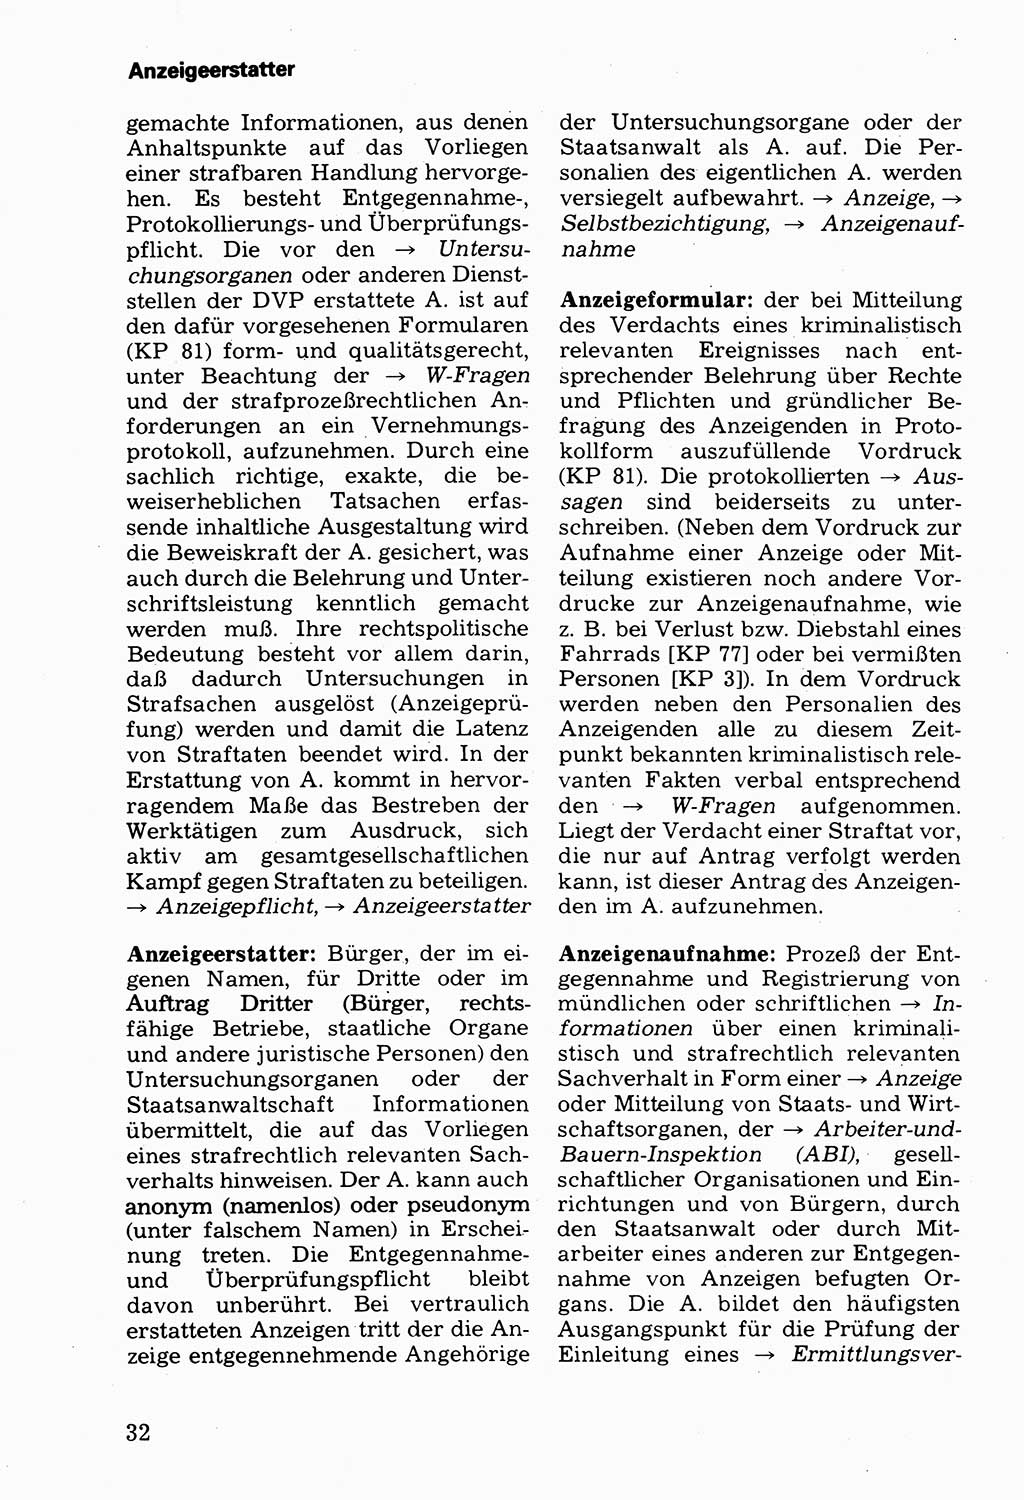 Wörterbuch der sozialistischen Kriminalistik [Deutsche Demokratische Republik (DDR)] 1981, Seite 32 (Wb. soz. Krim. DDR 1981, S. 32)